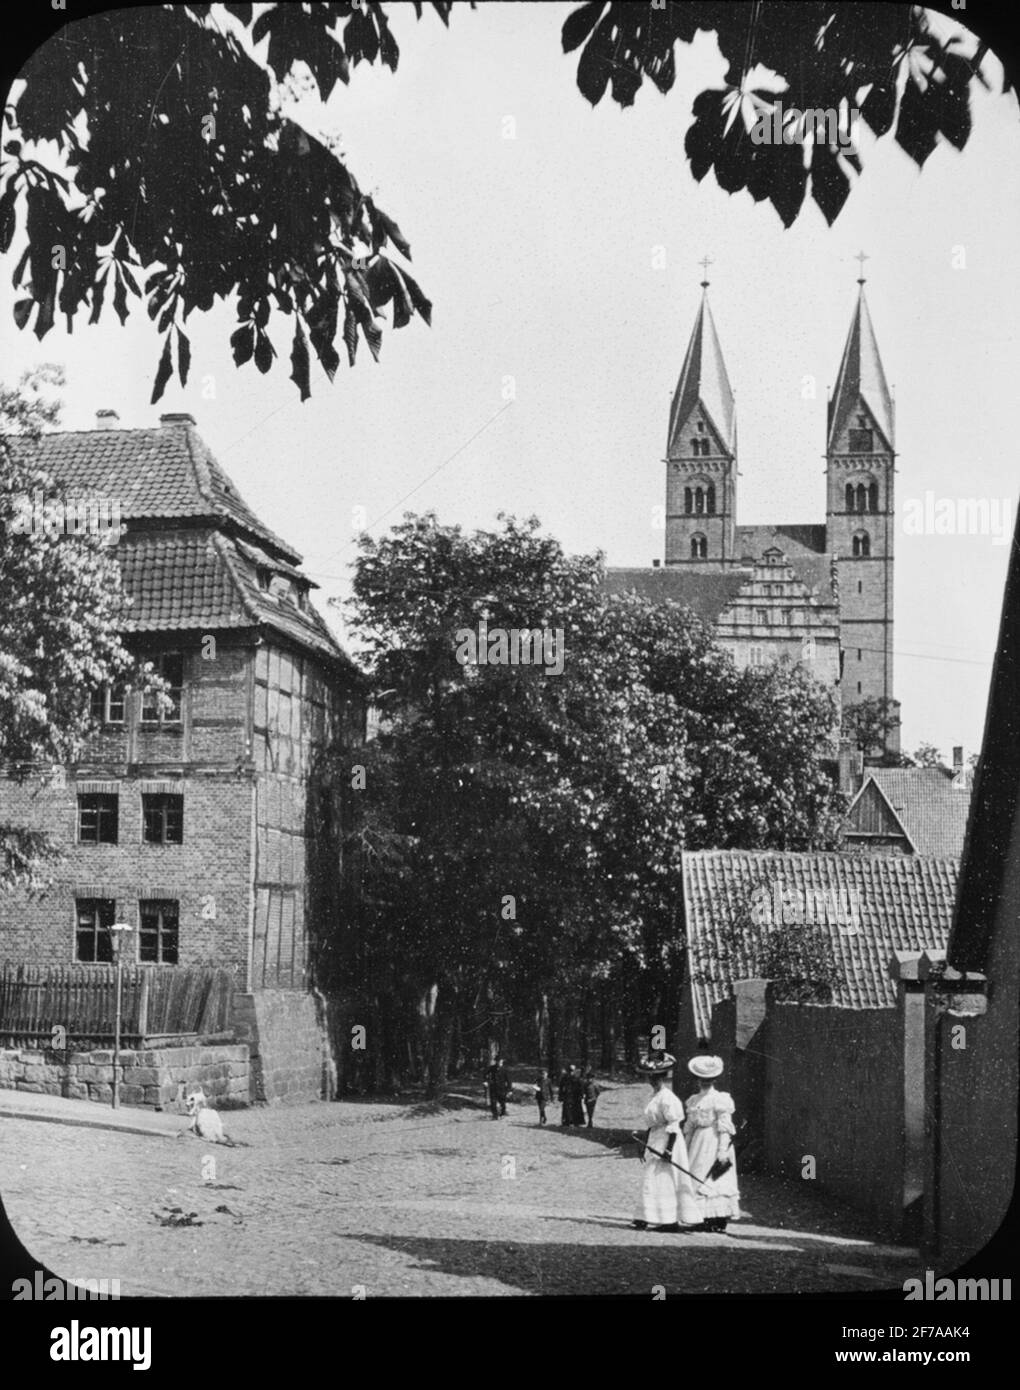 Immagine skioptic con motivo da Quedlinburg. Sullo sfondo, la Cattedrale di San Servazio, 1902. L'immagine è stata memorizzata in cartone etichettato: Il viaggio nel 1902. 11.quedlingburg 3. Magdeburgo 5. Foto Stock